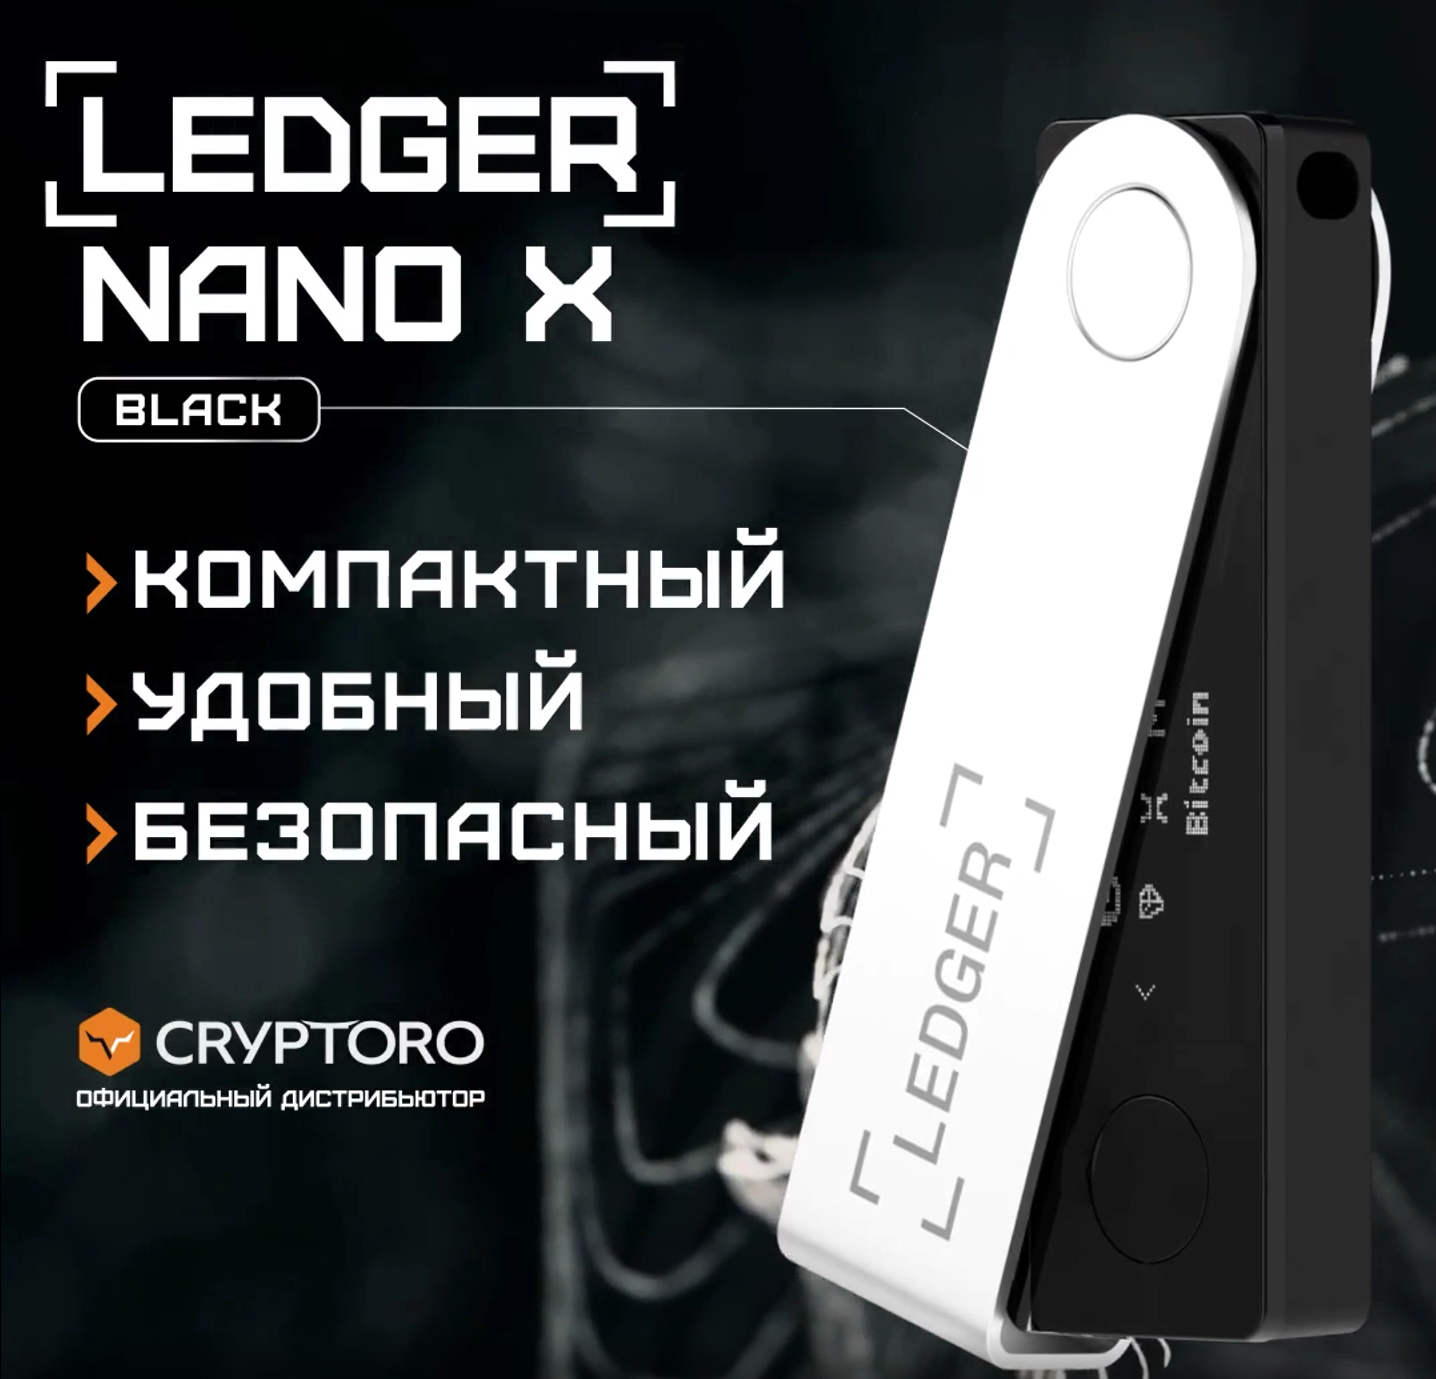 Мультивалютный холодный кошелек Ledger Nano X Black